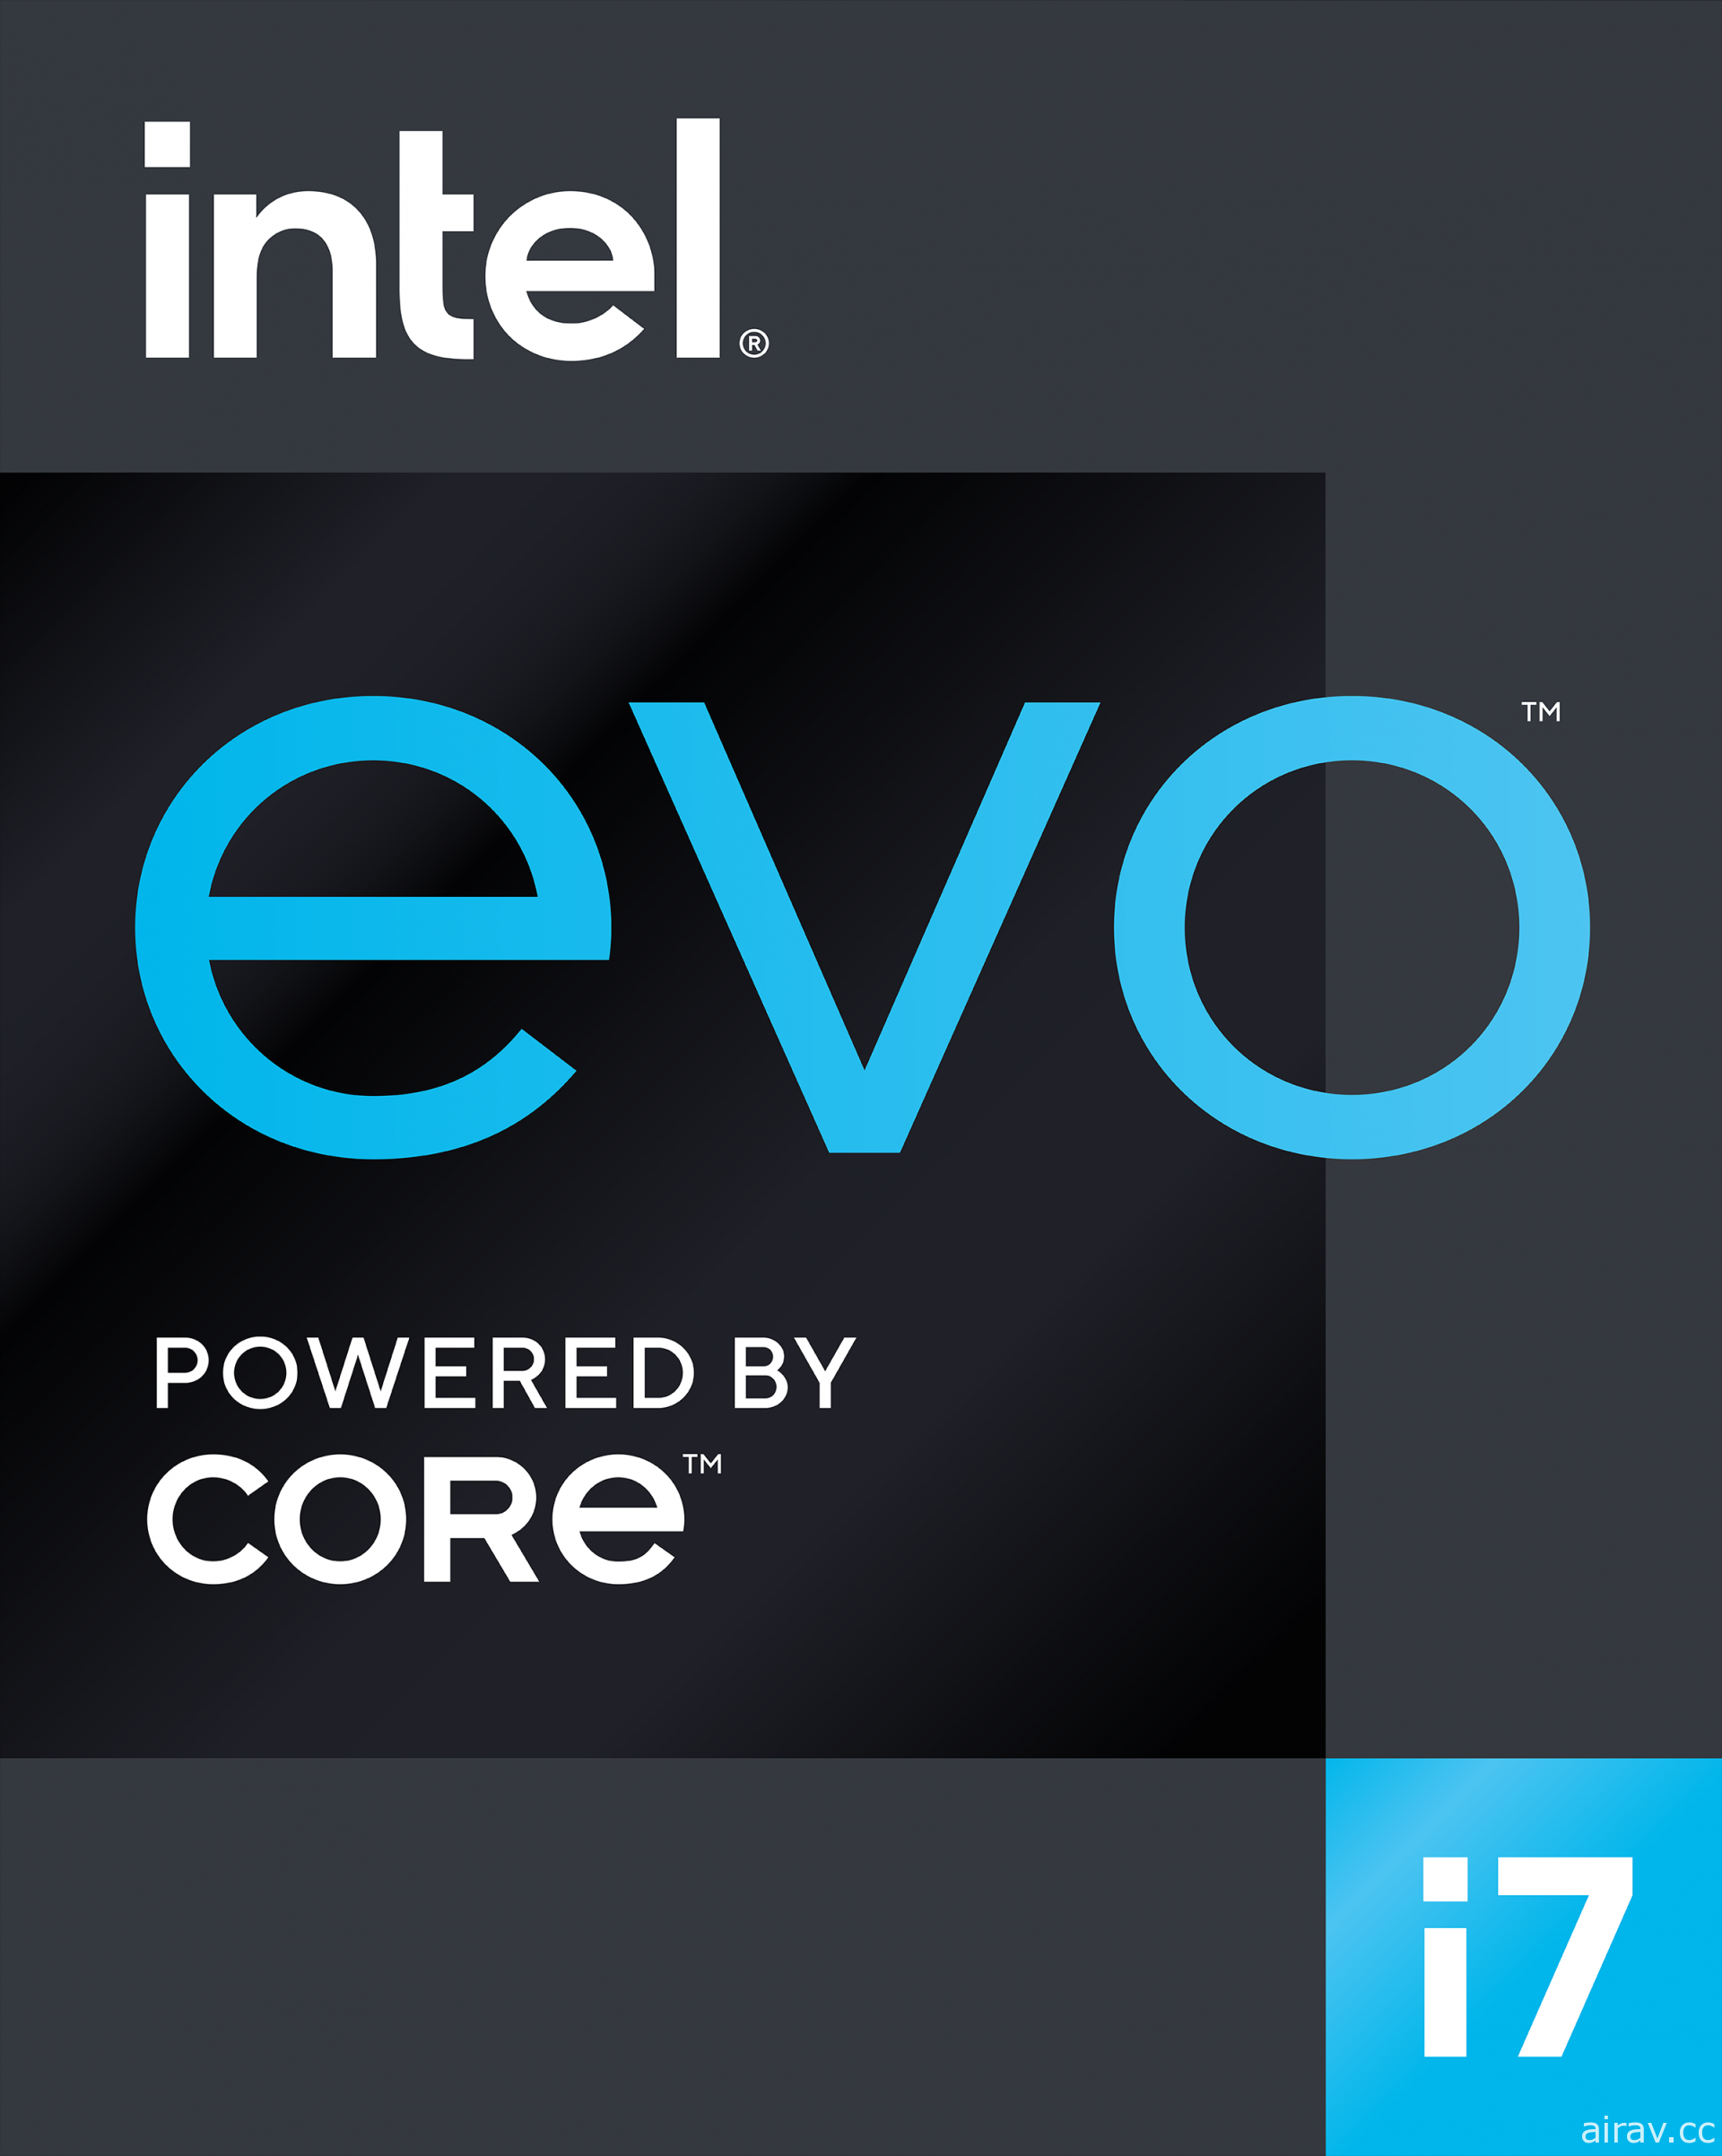 英特尔公开最新笔电处理器 Tiger Lake 与 Intel Evo 平台品牌